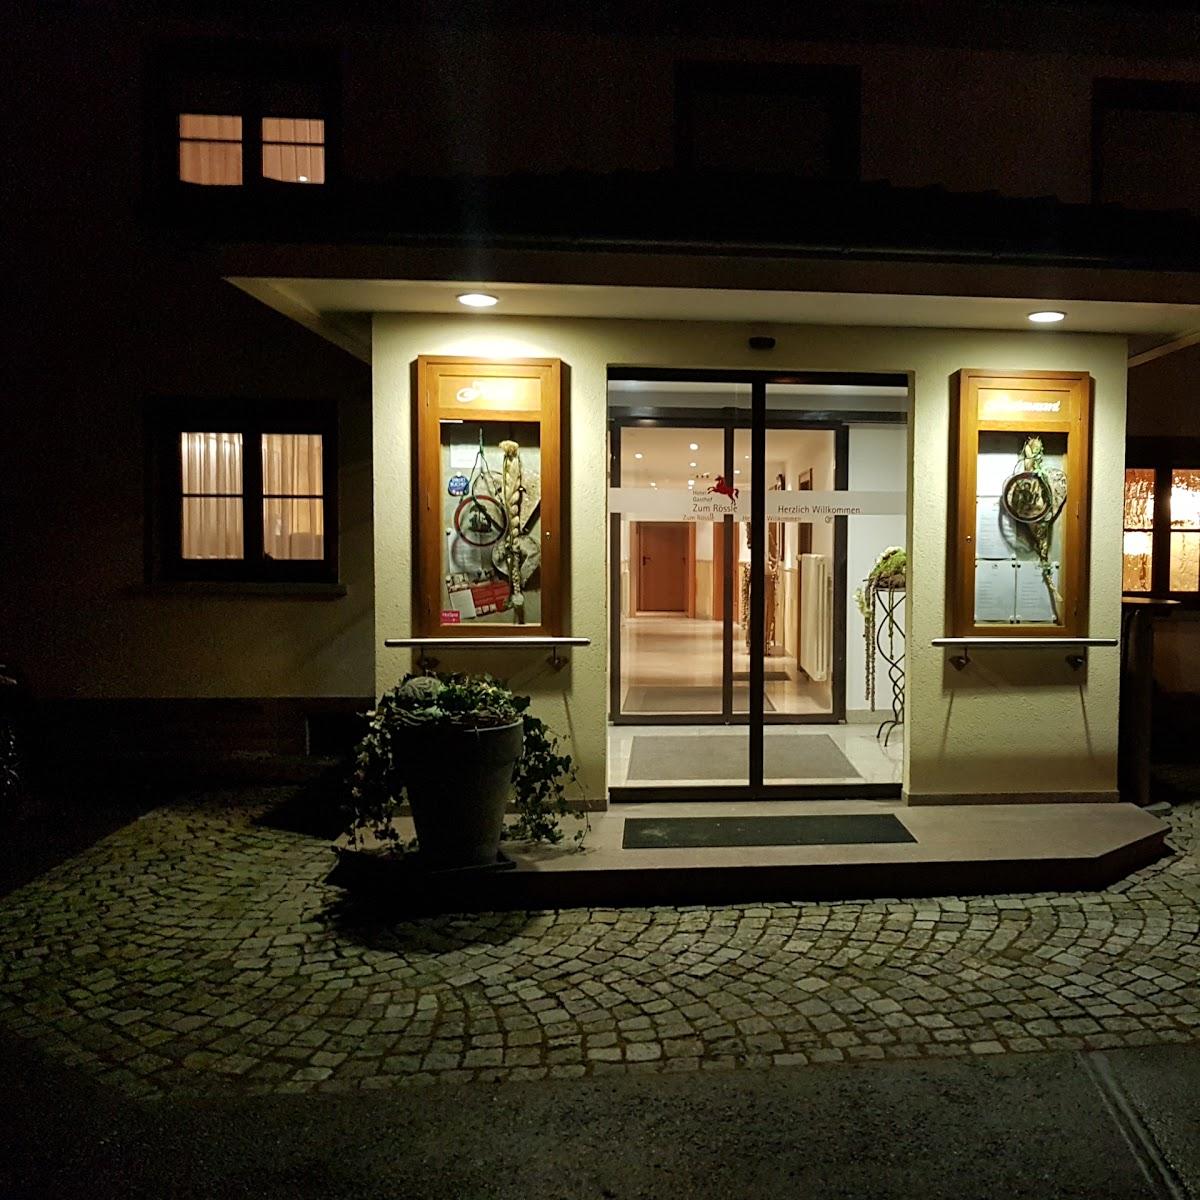 Restaurant "Hotel Gasthof zum Rössle" in  Altenstadt